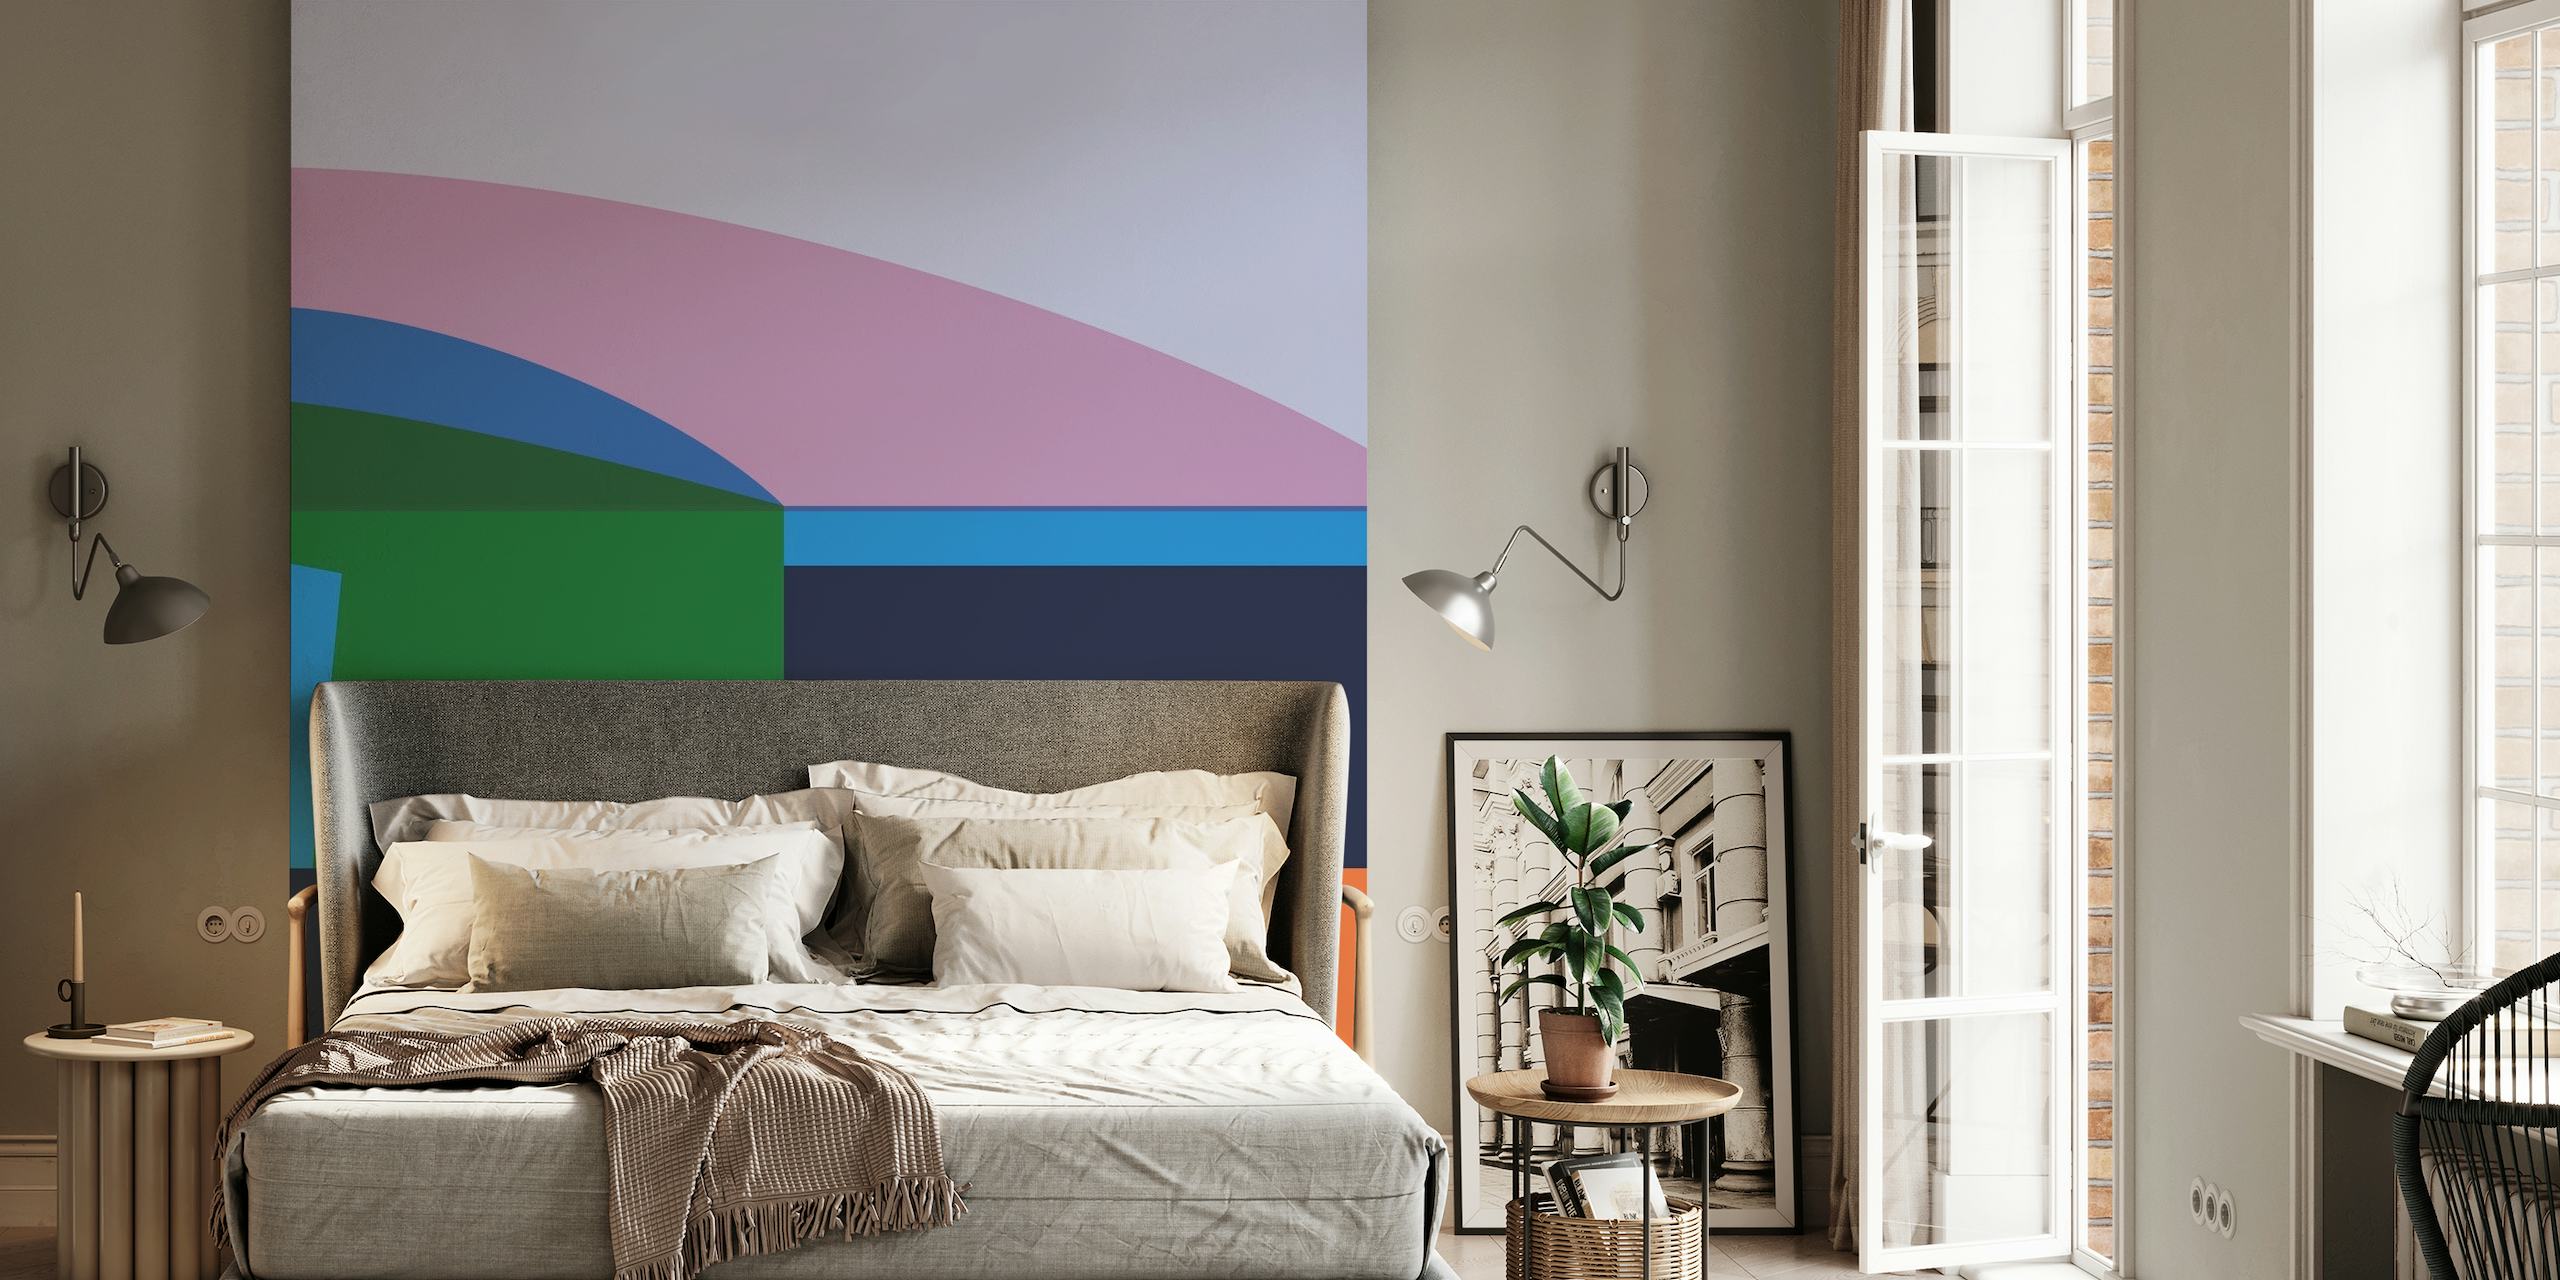 Abstrakt geometrisk vægmaleri med beroligende farveblokke i nuancer af pink, grøn, blå og orange